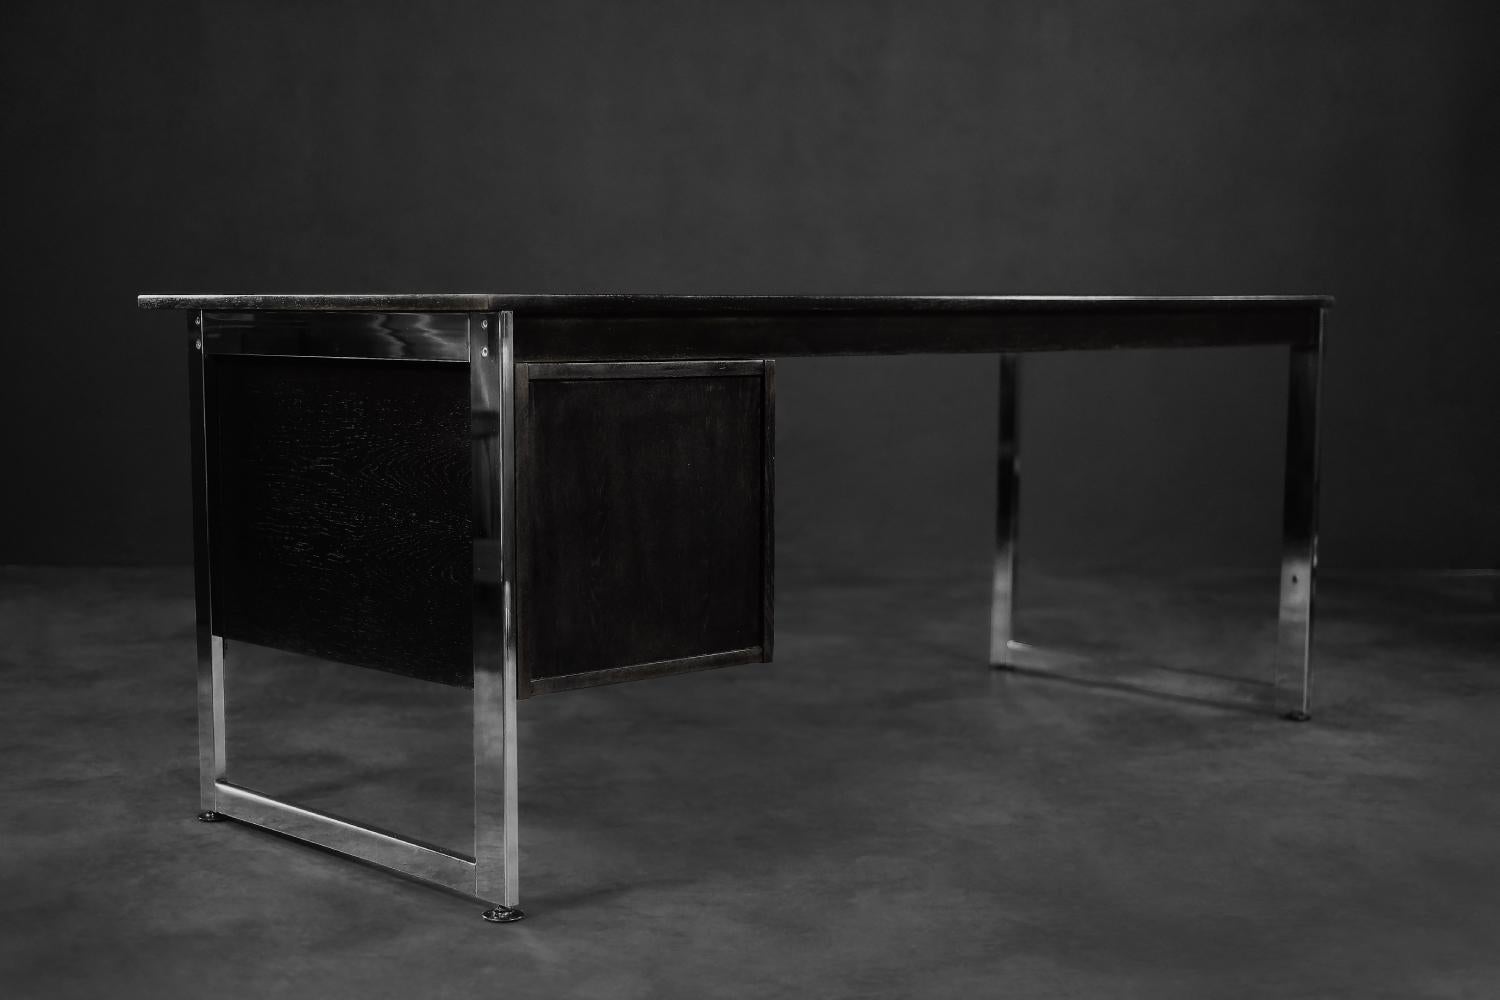 Dieser minimalistische Bürotisch wurde in den 1970er Jahren in Dänemark hergestellt. Der Schreibtisch zeichnet sich durch klare Linien aus und schafft eine harmonische Komposition der verwendeten Materialien. Die große Platte und das Paneel mit den